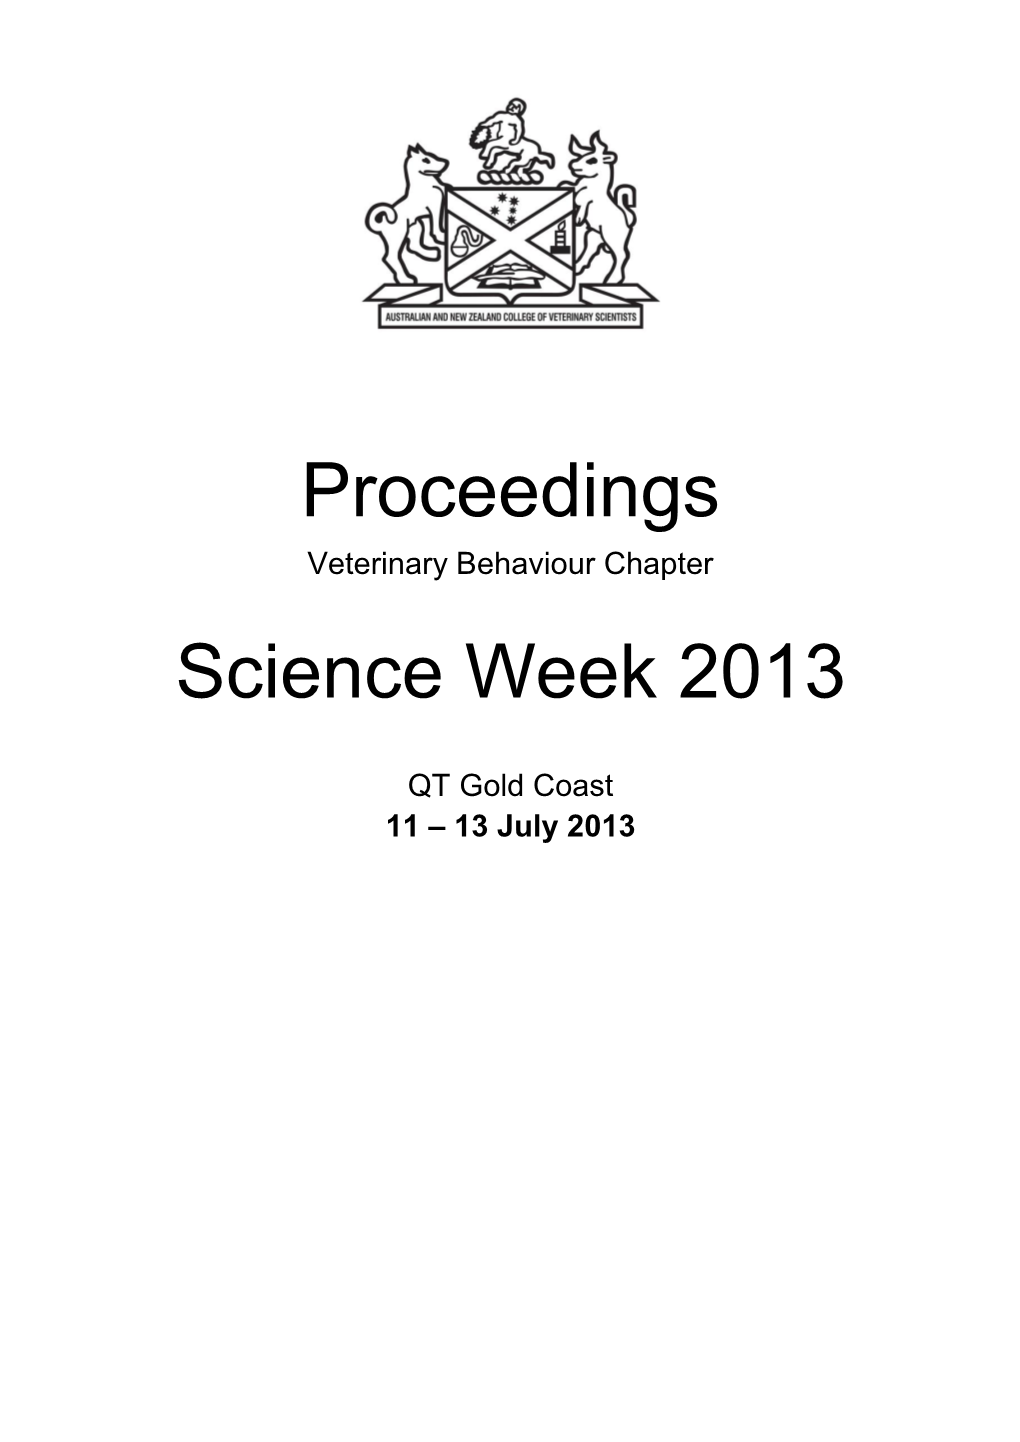 Proceedings Science Week 2013